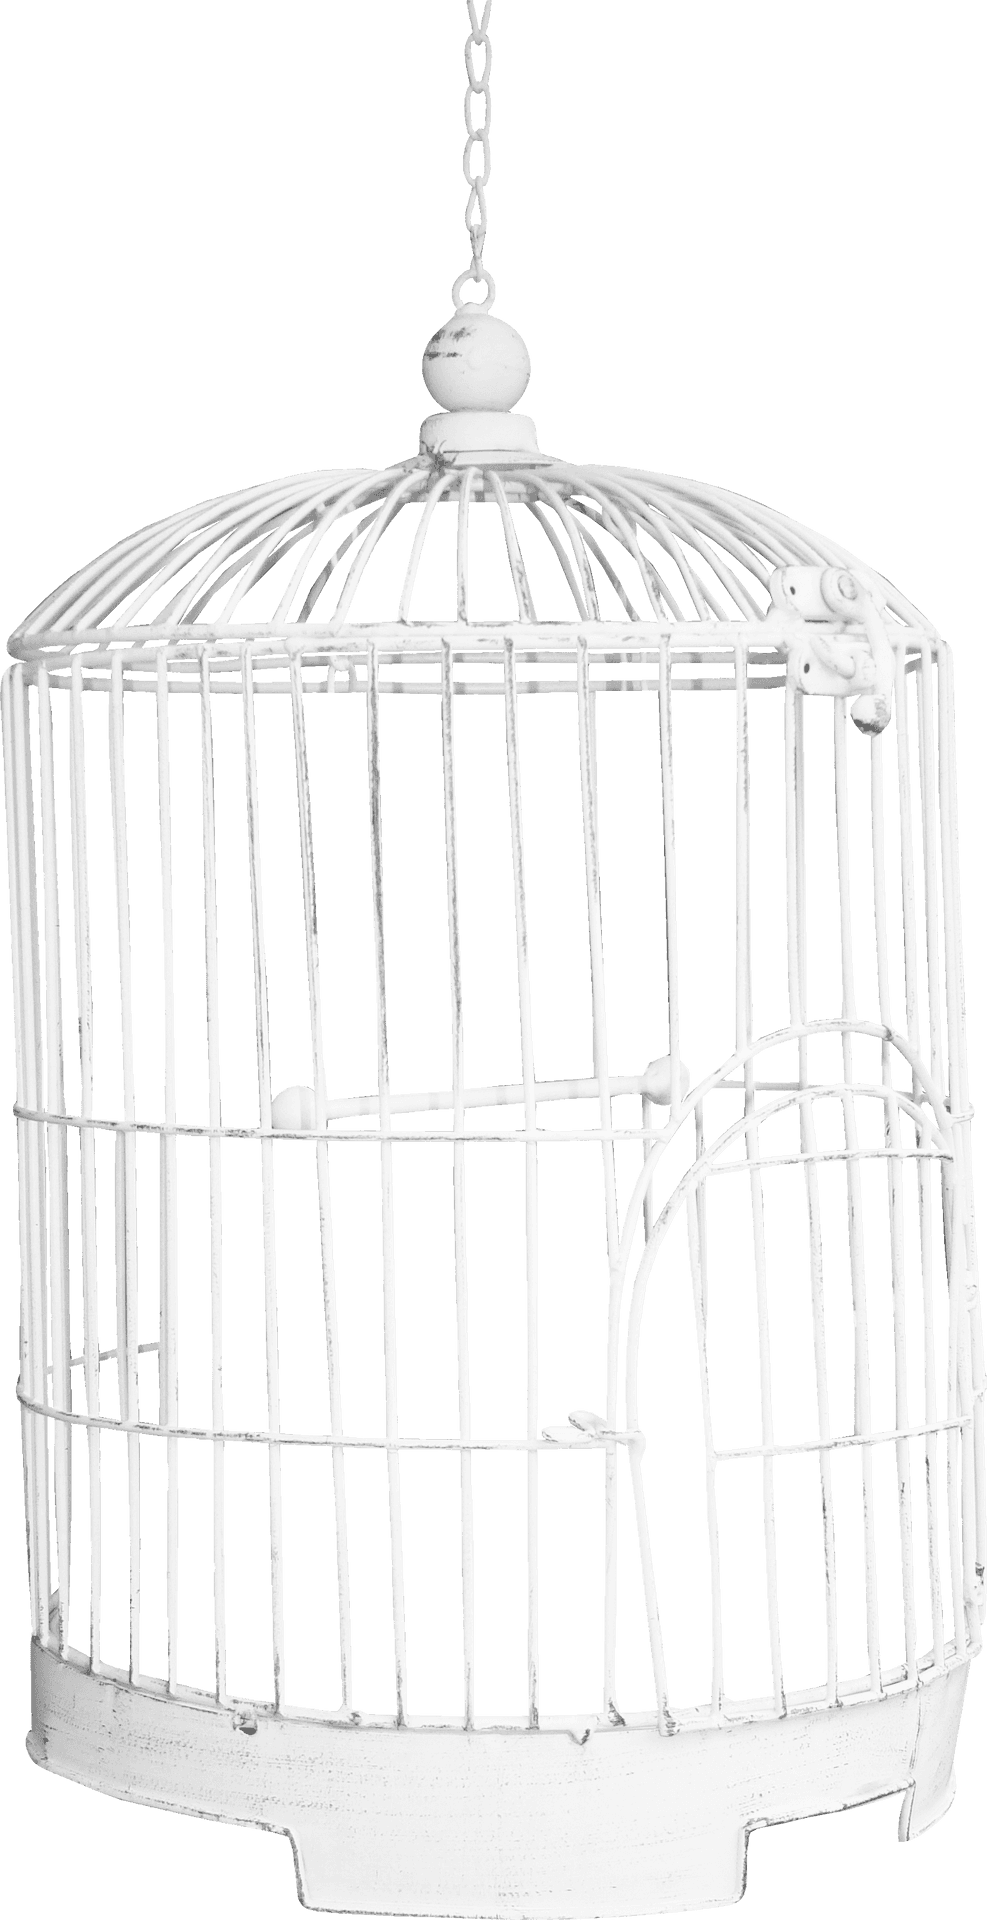 White Bird Cage Hanging PNG image